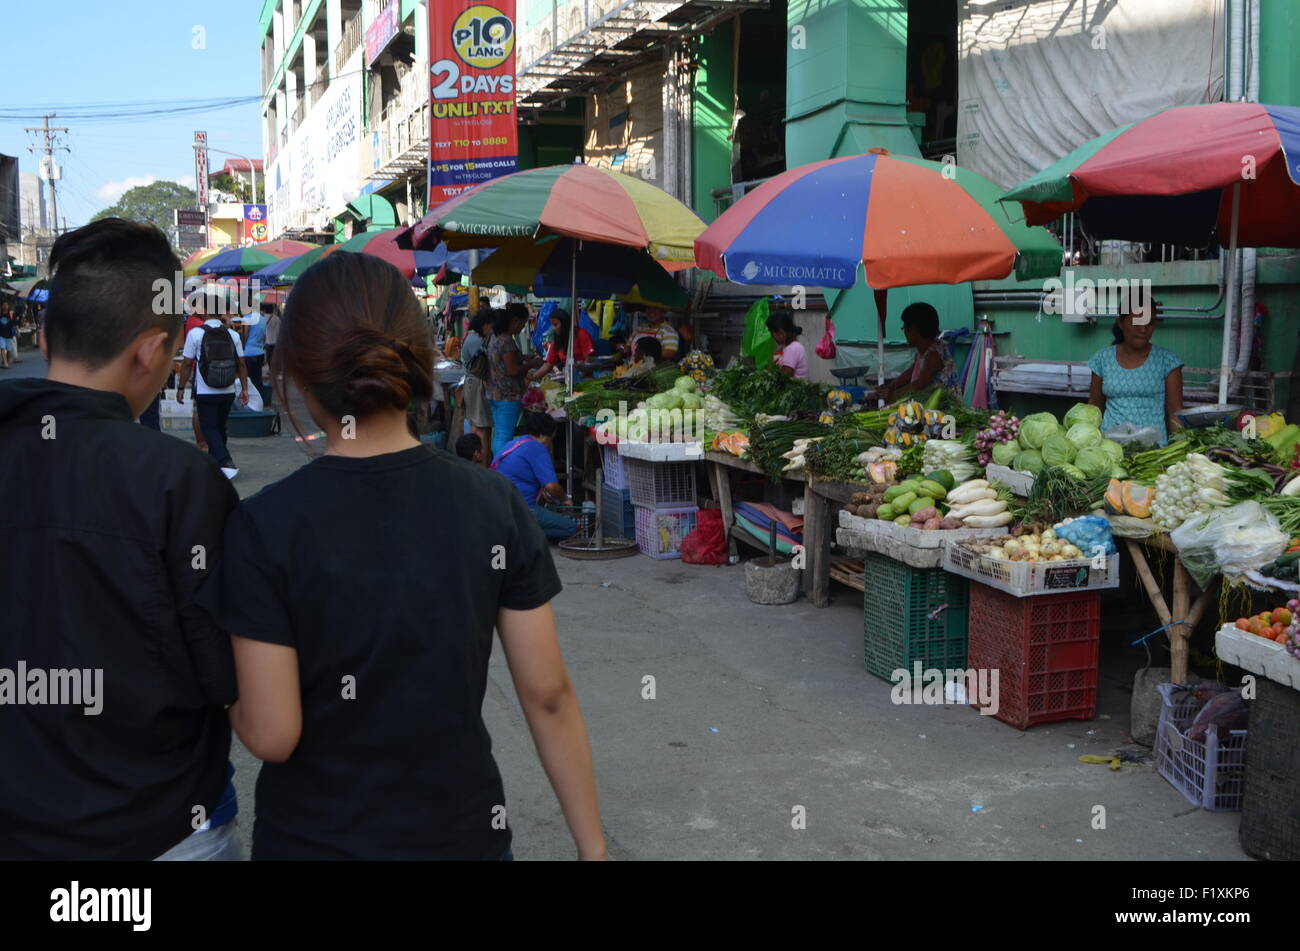 Il luogo di mercato inTugeogharo del Nord la maggior parte delle stato di thePhilippines.strade bancarelle che vendono di tutto da qualche verdura fresca, frutta Foto Stock